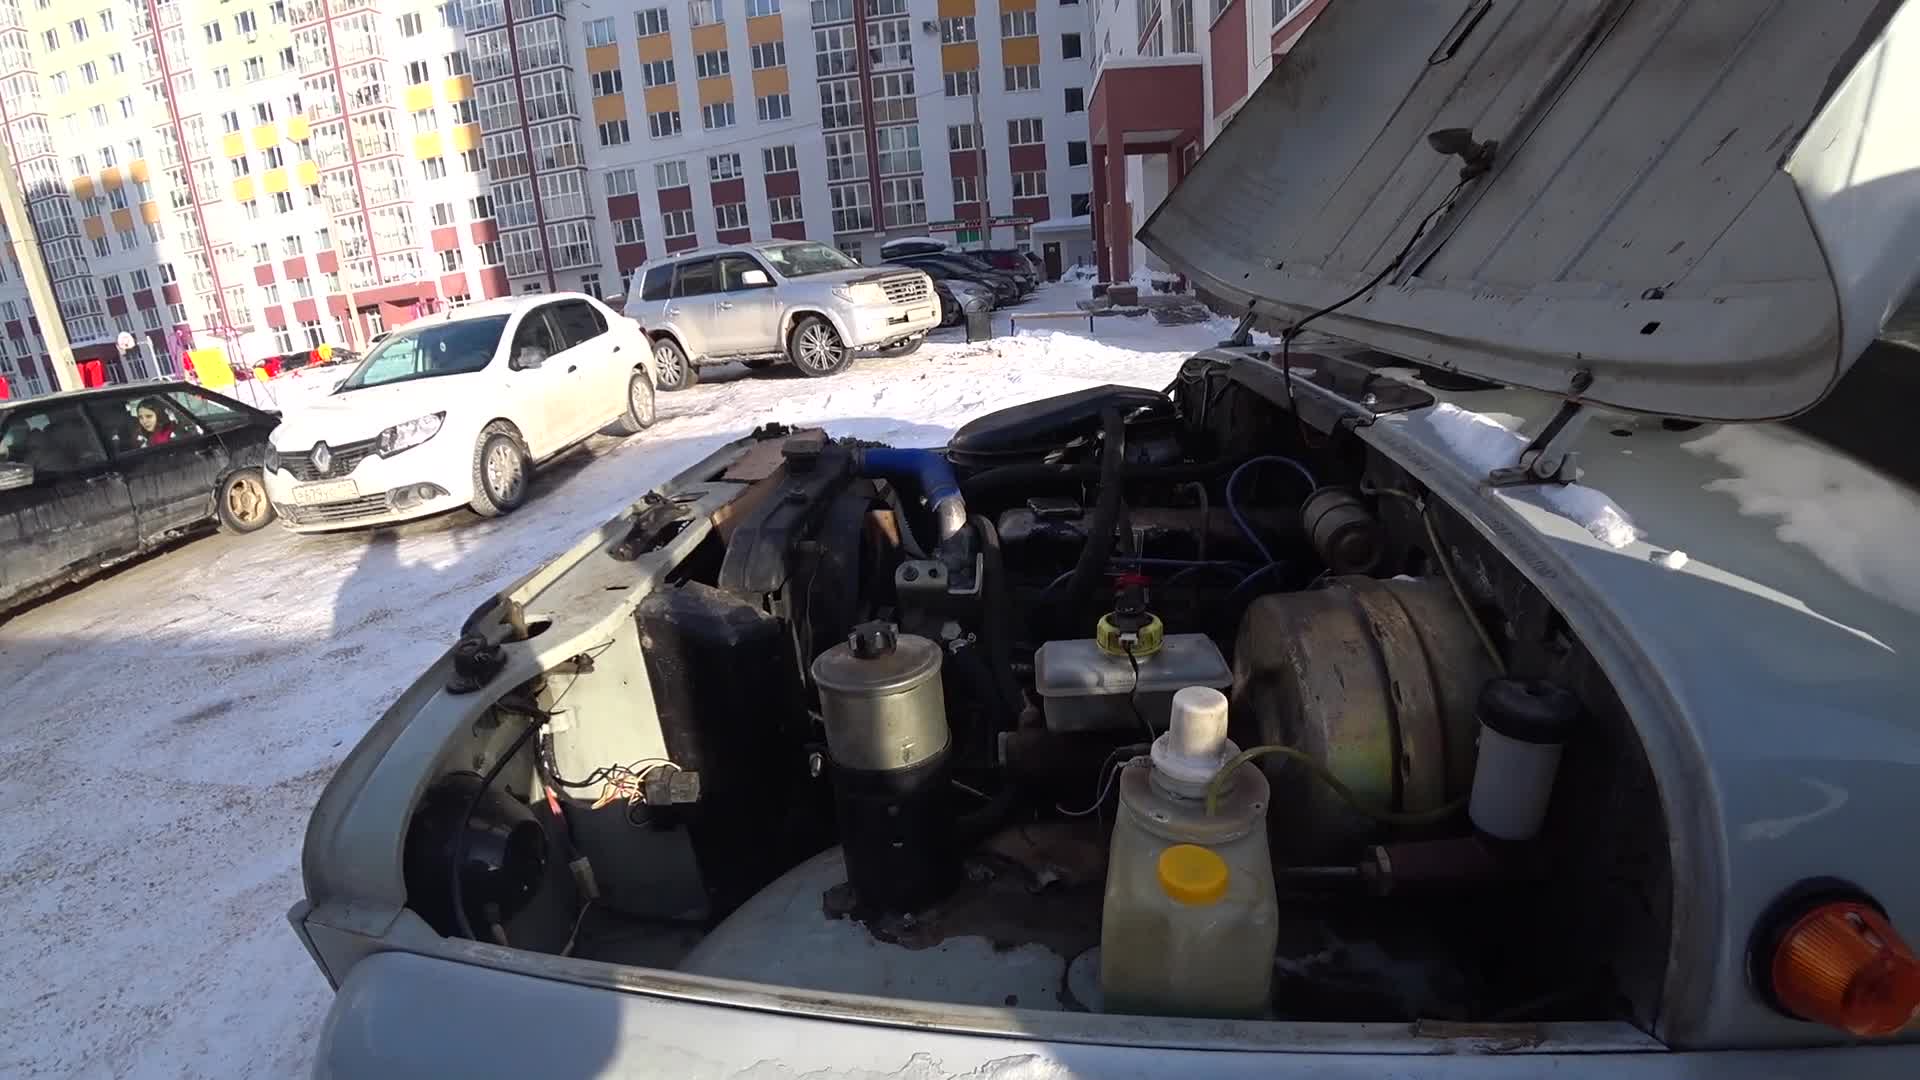 Руководства по эксплуатации, обслуживанию и ремонту УАЗ на базе модели 469